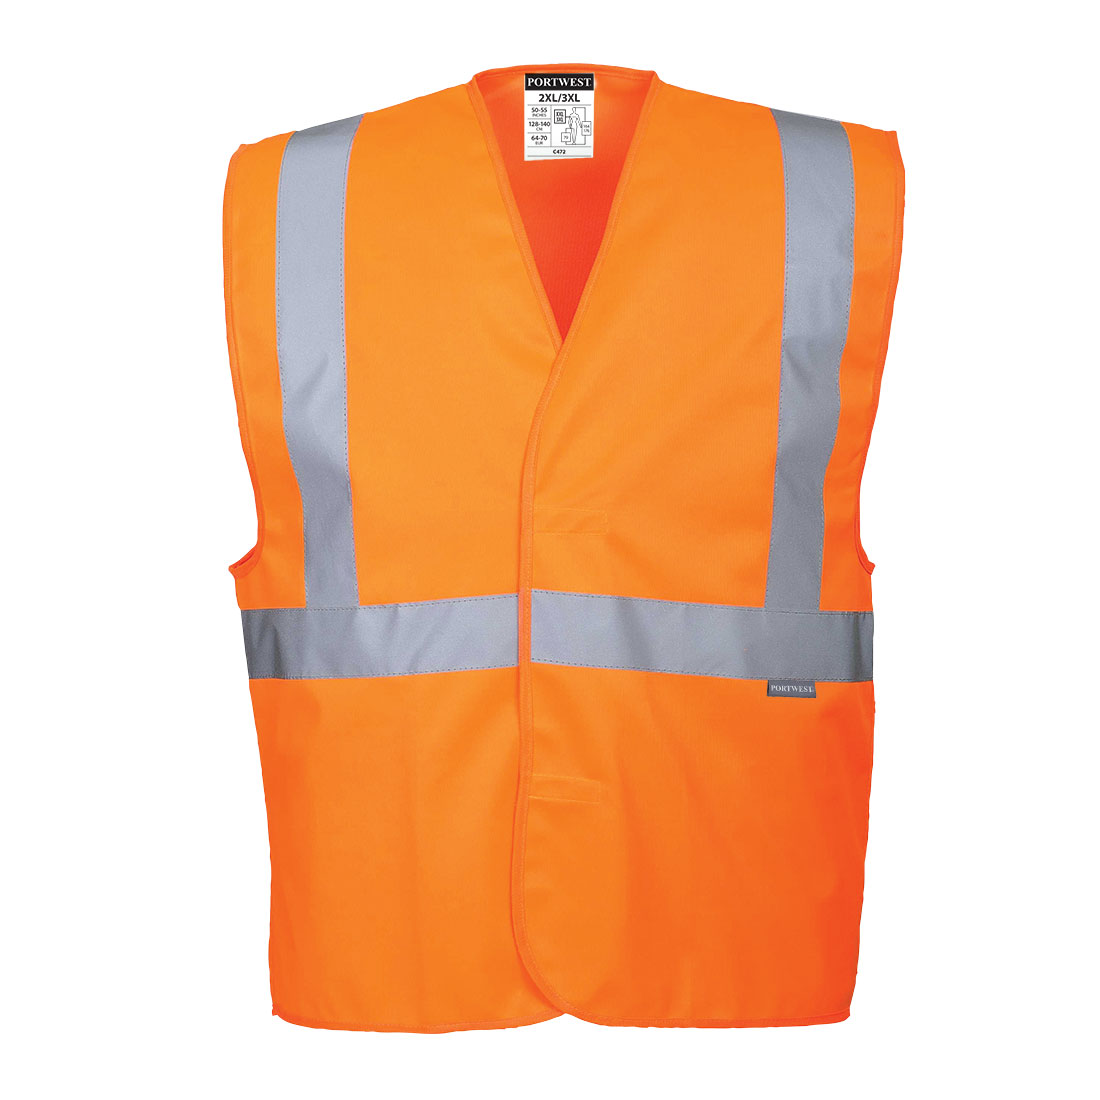 Reflexní vesta s jedním pruhem Barva: oranžová, Velikost: 2XL/3XL